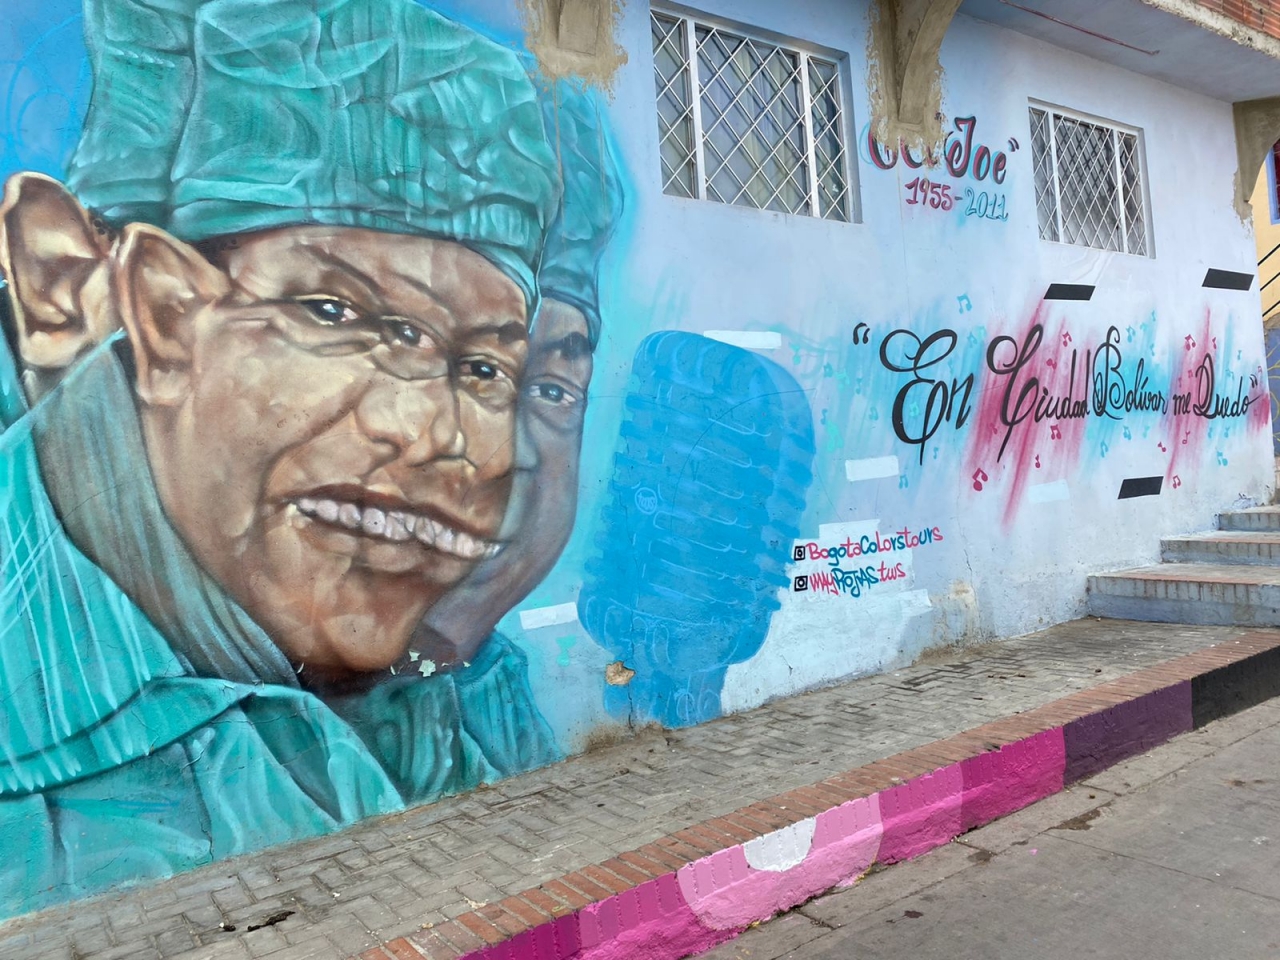 &#039;El Joe Arroyo como representación del desplazamiento forzado&#039;|‘Maicol pintando la Calle del Color junto a Mayerli, una lideresa’|‘Mural de las mujeres representativas de la|‘Mural de la mamá de Maicol’|‘Un campesino con una flauta de pan’|||